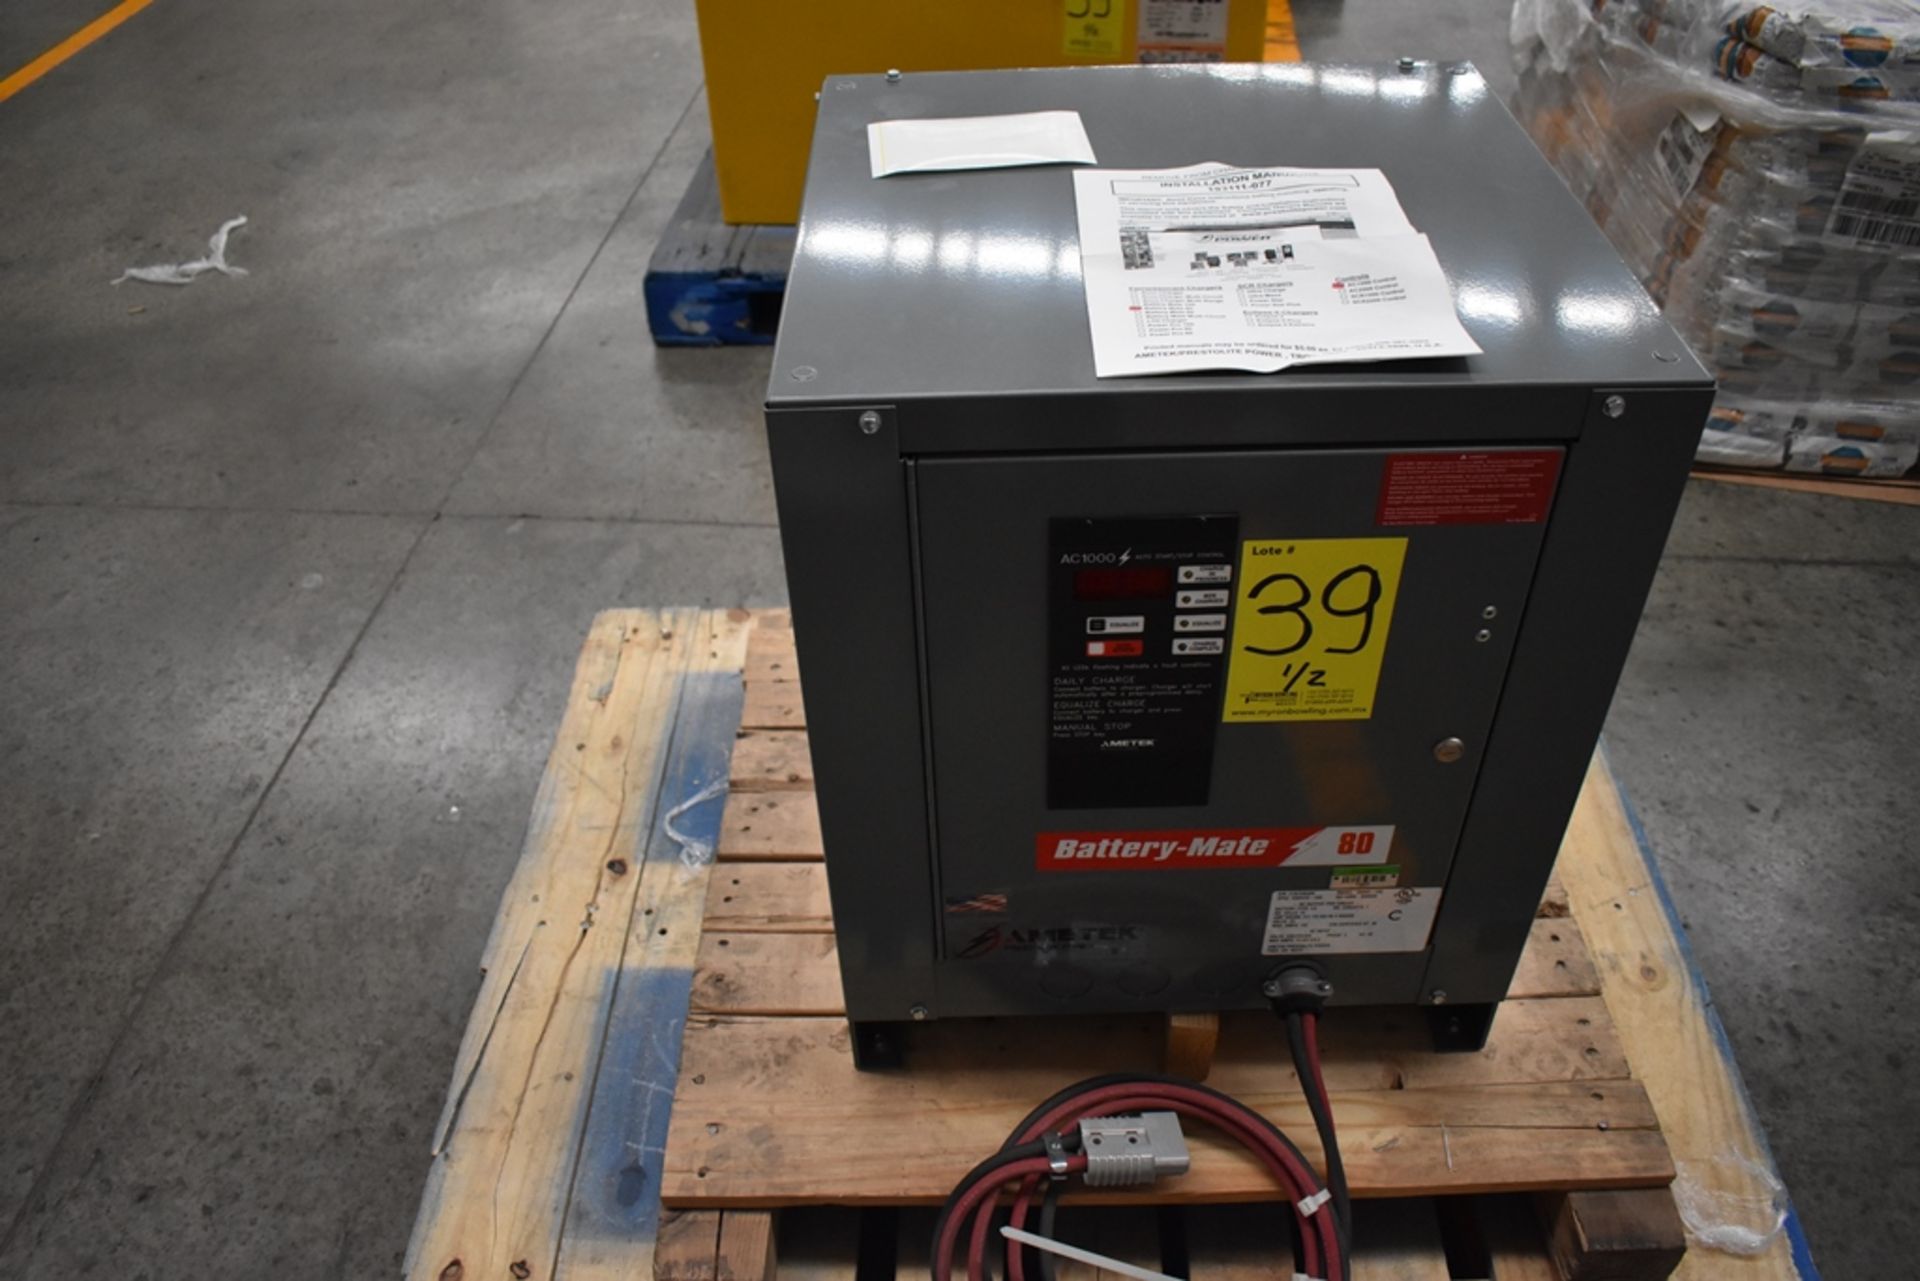 Ametek Prestolite Power Forklift Battery Charger, Model Mate-80 and Battery Brand Deka for 24 volts - Image 4 of 20